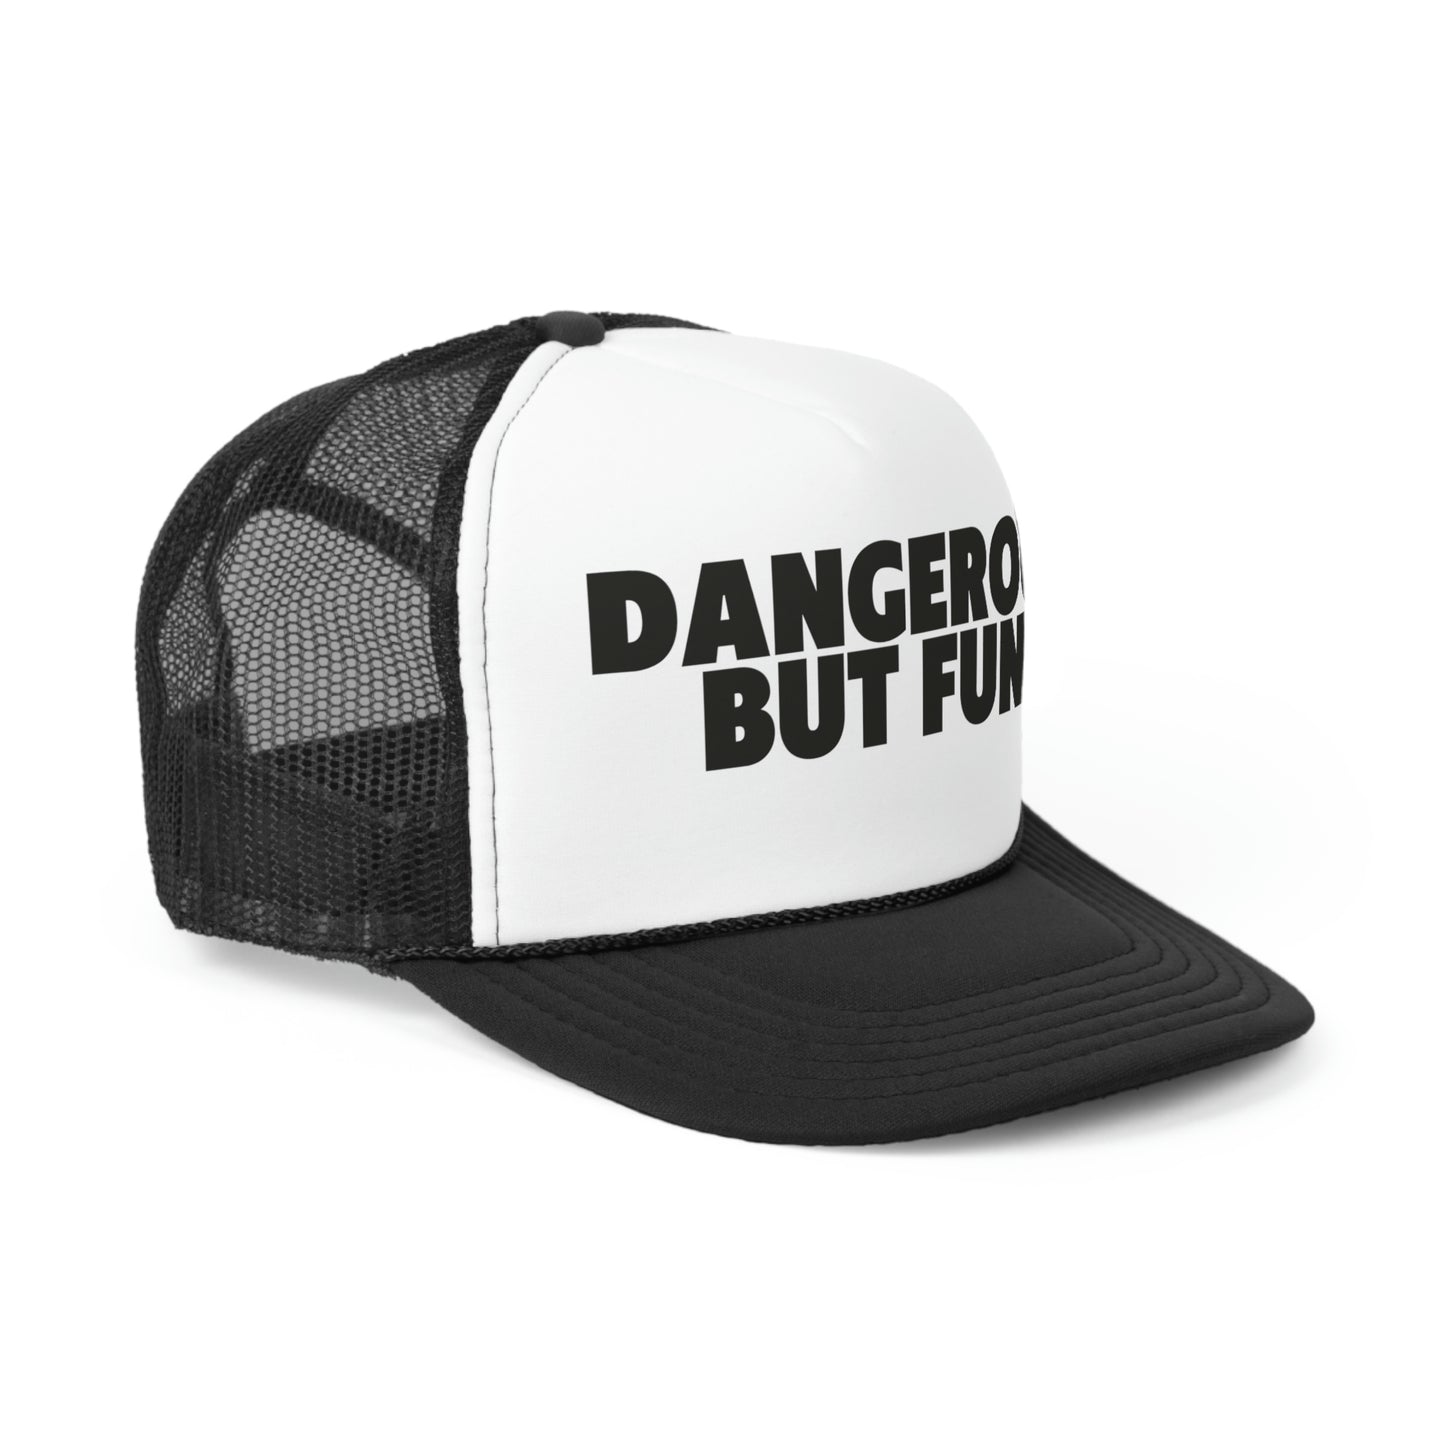 Dangerous But fun Aim high Trucker Hat